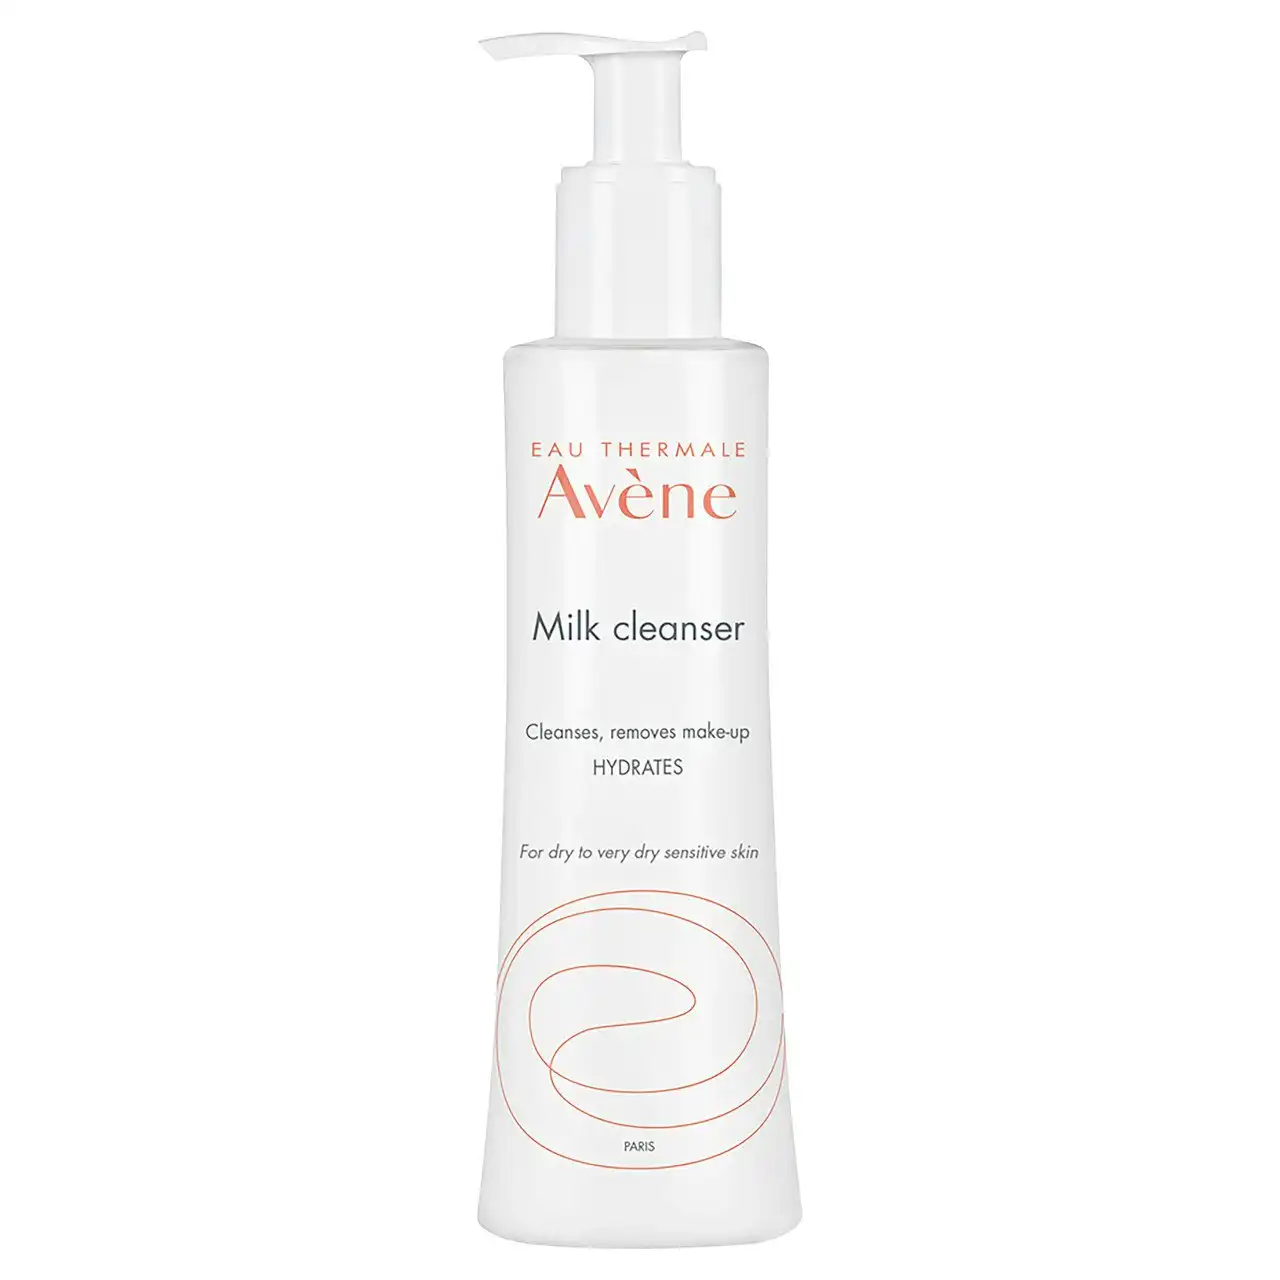 Av ne Gentle Milk Cleanser 200ml - Cleanser for Dry Sensitive skin